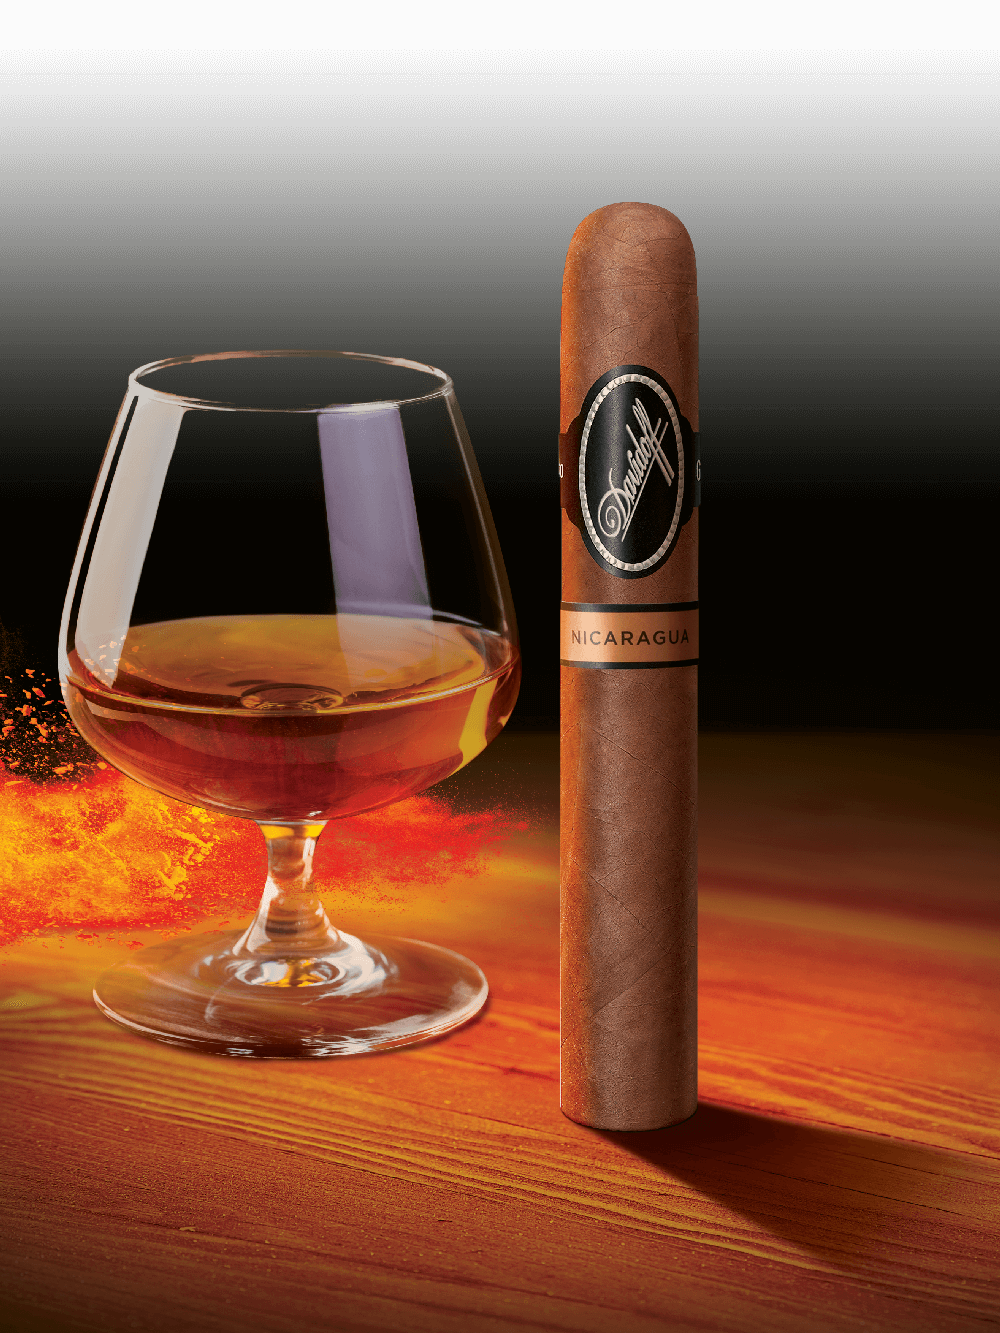 Eine Davidoff Nicaragua-Zigarre, die neben einem Glas mit Whisky steht.